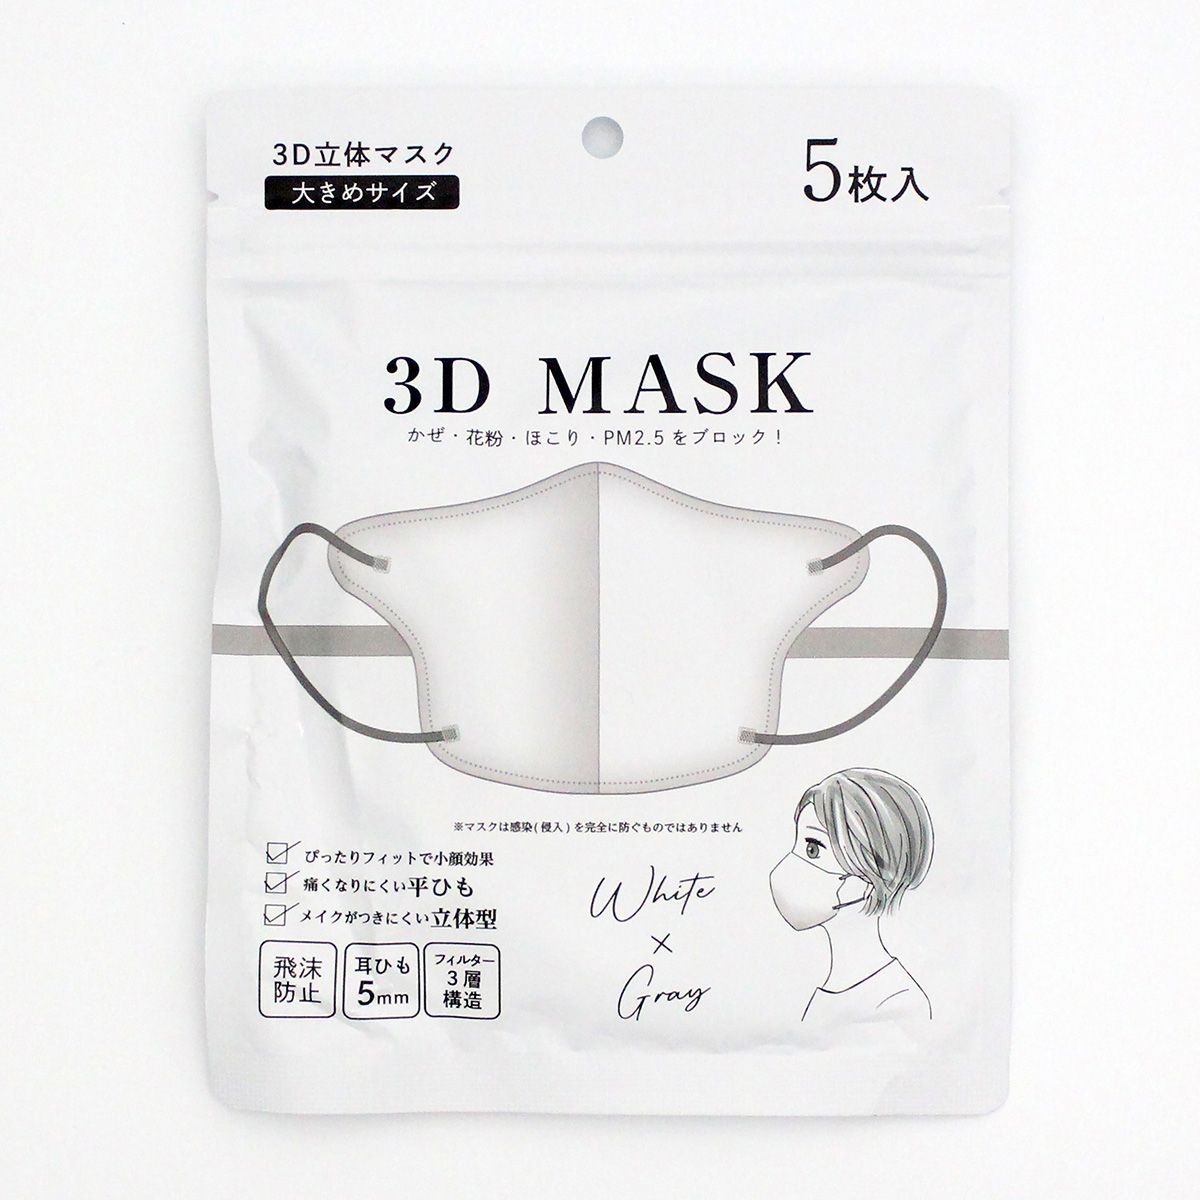 3D立体マスク 不織布マスク ホワイトxグレー 大きめ 5枚入り 347004